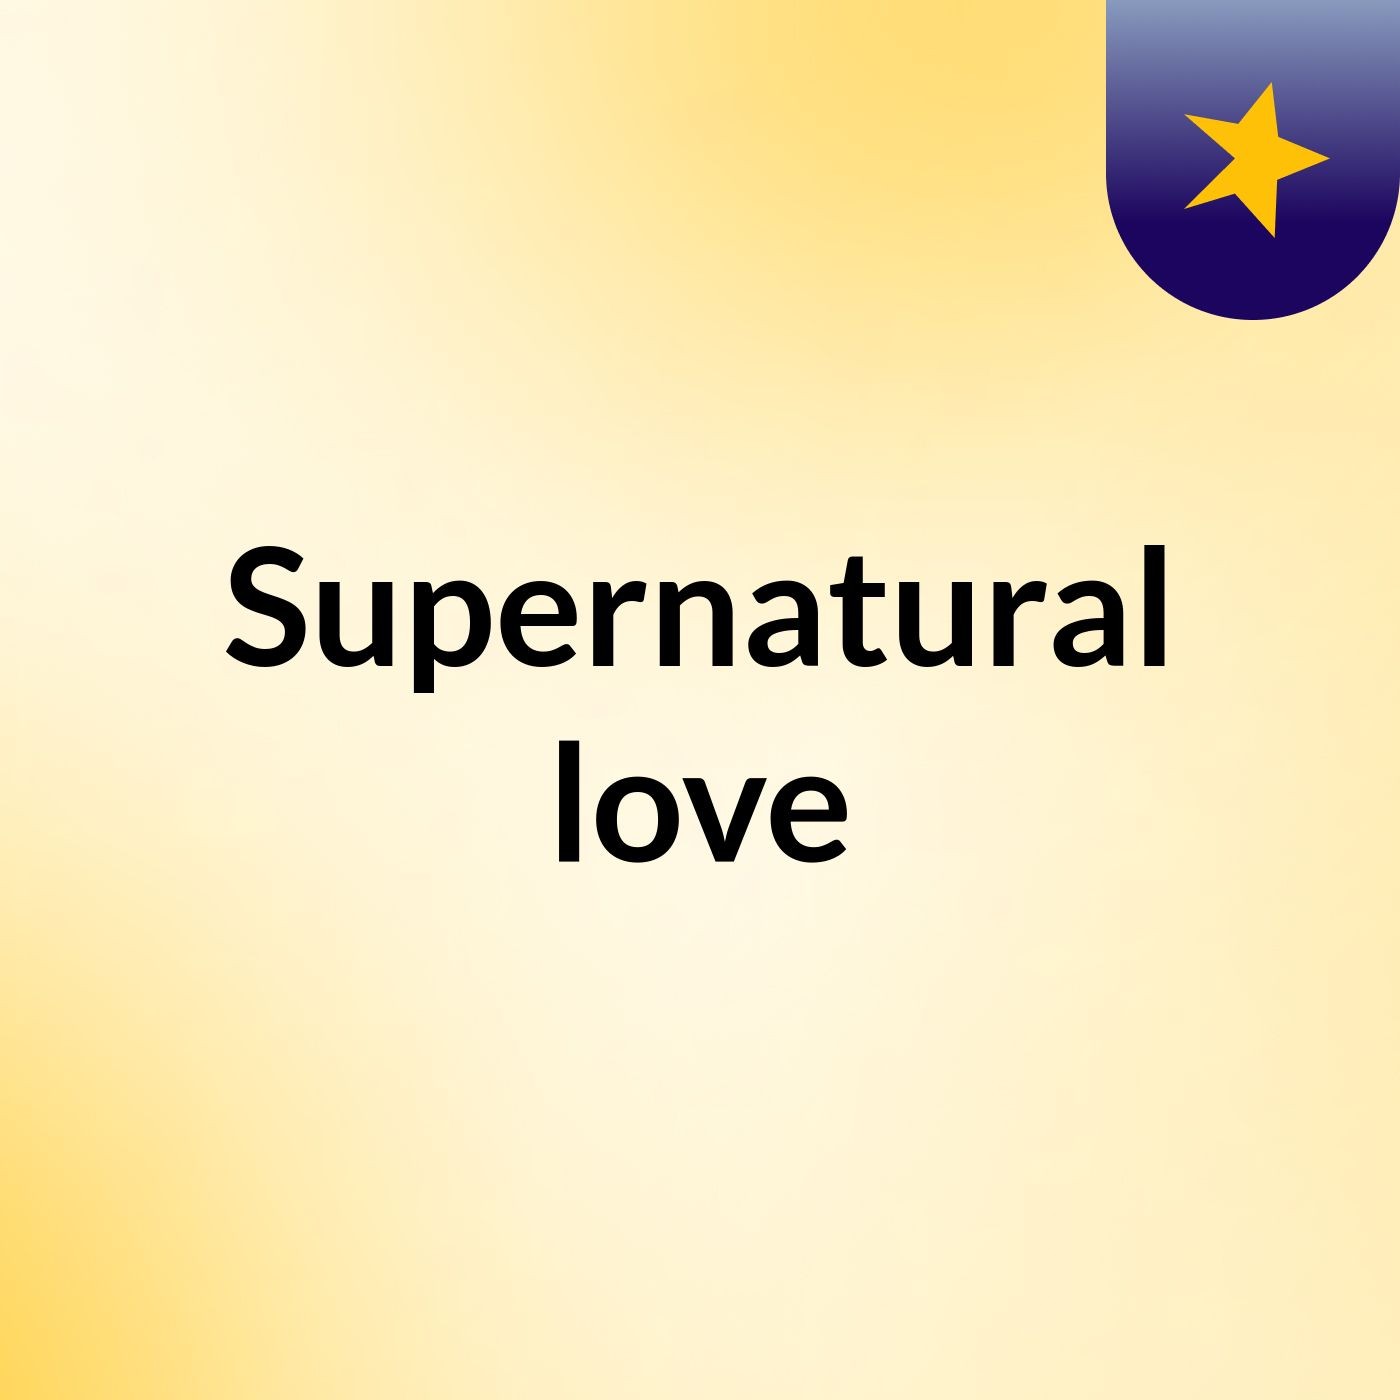 Supernatural love